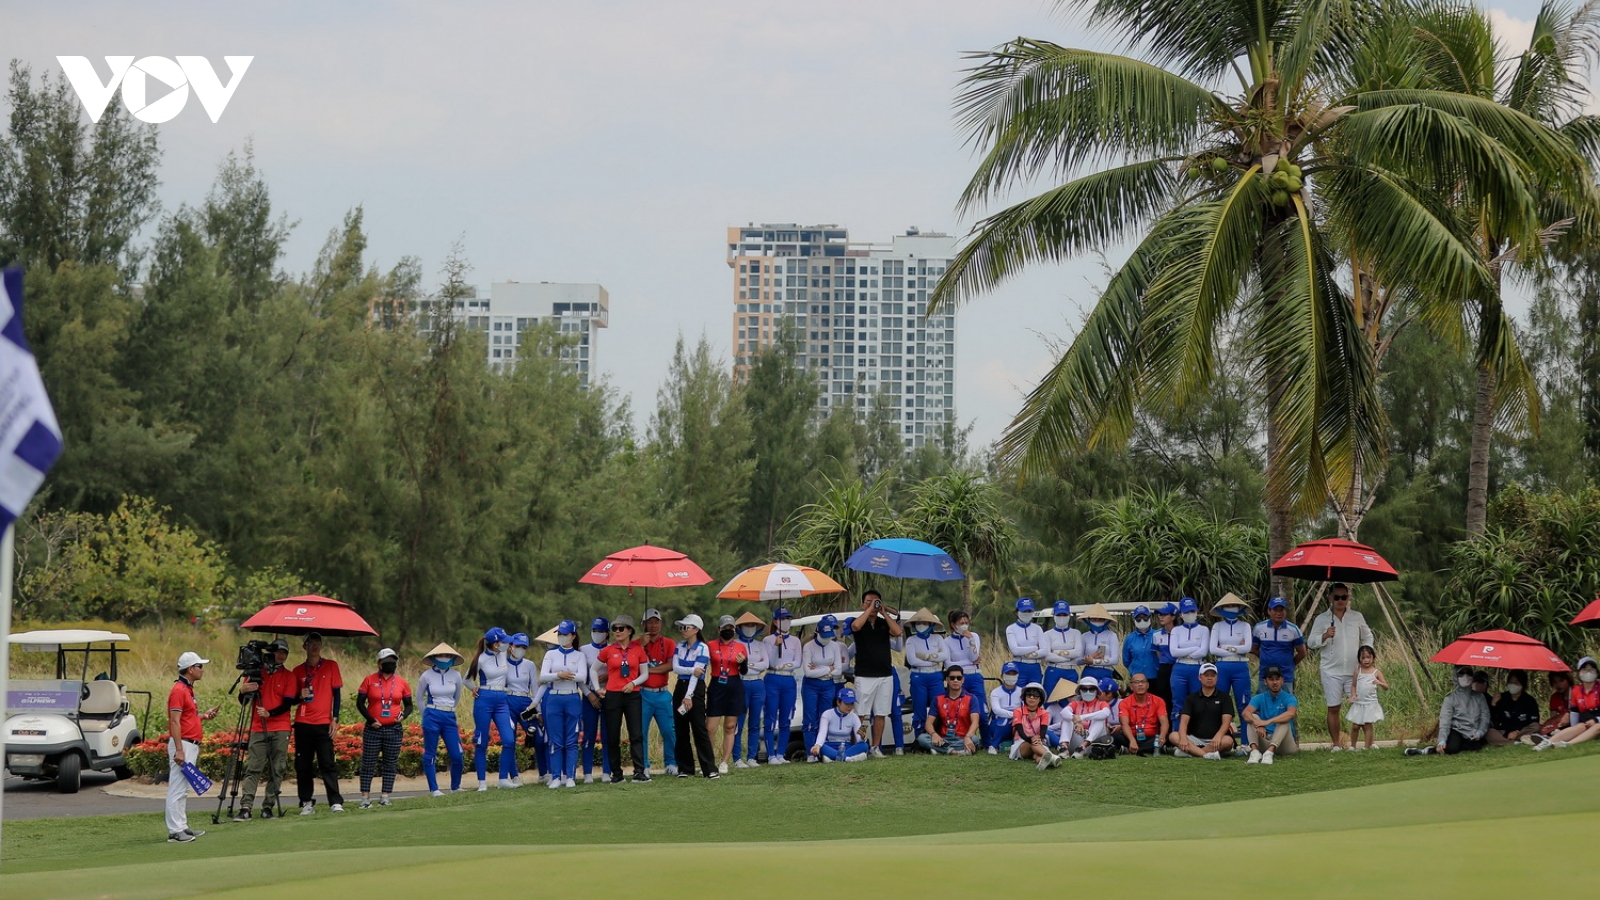 Du lịch golf, sản phẩm tiềm năng của Đà Nẵng